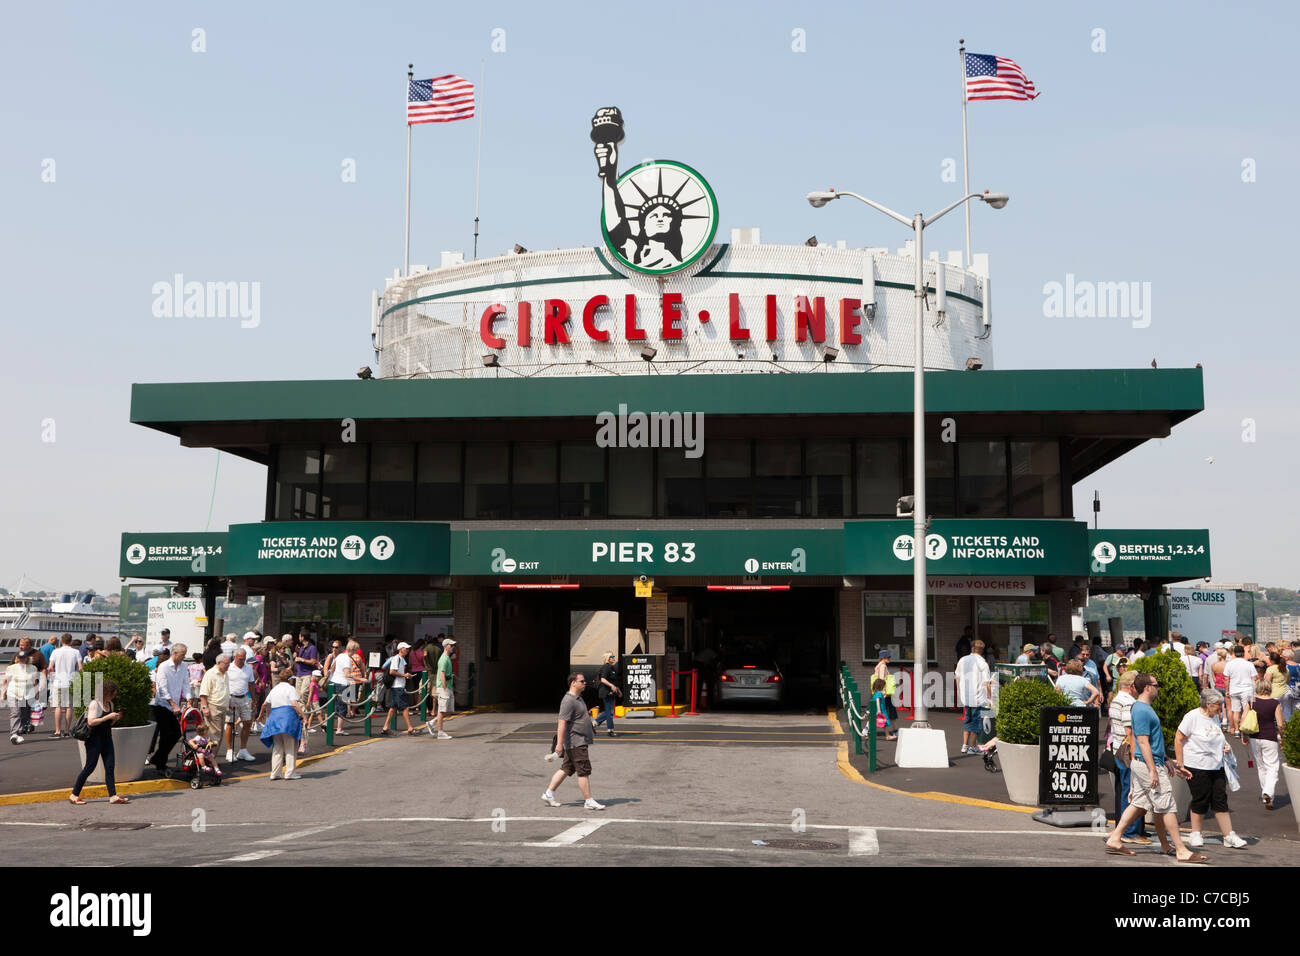 Die Circle Line Sightseeing cruise aufbauend auf Pier 83 in New York City. Stockfoto